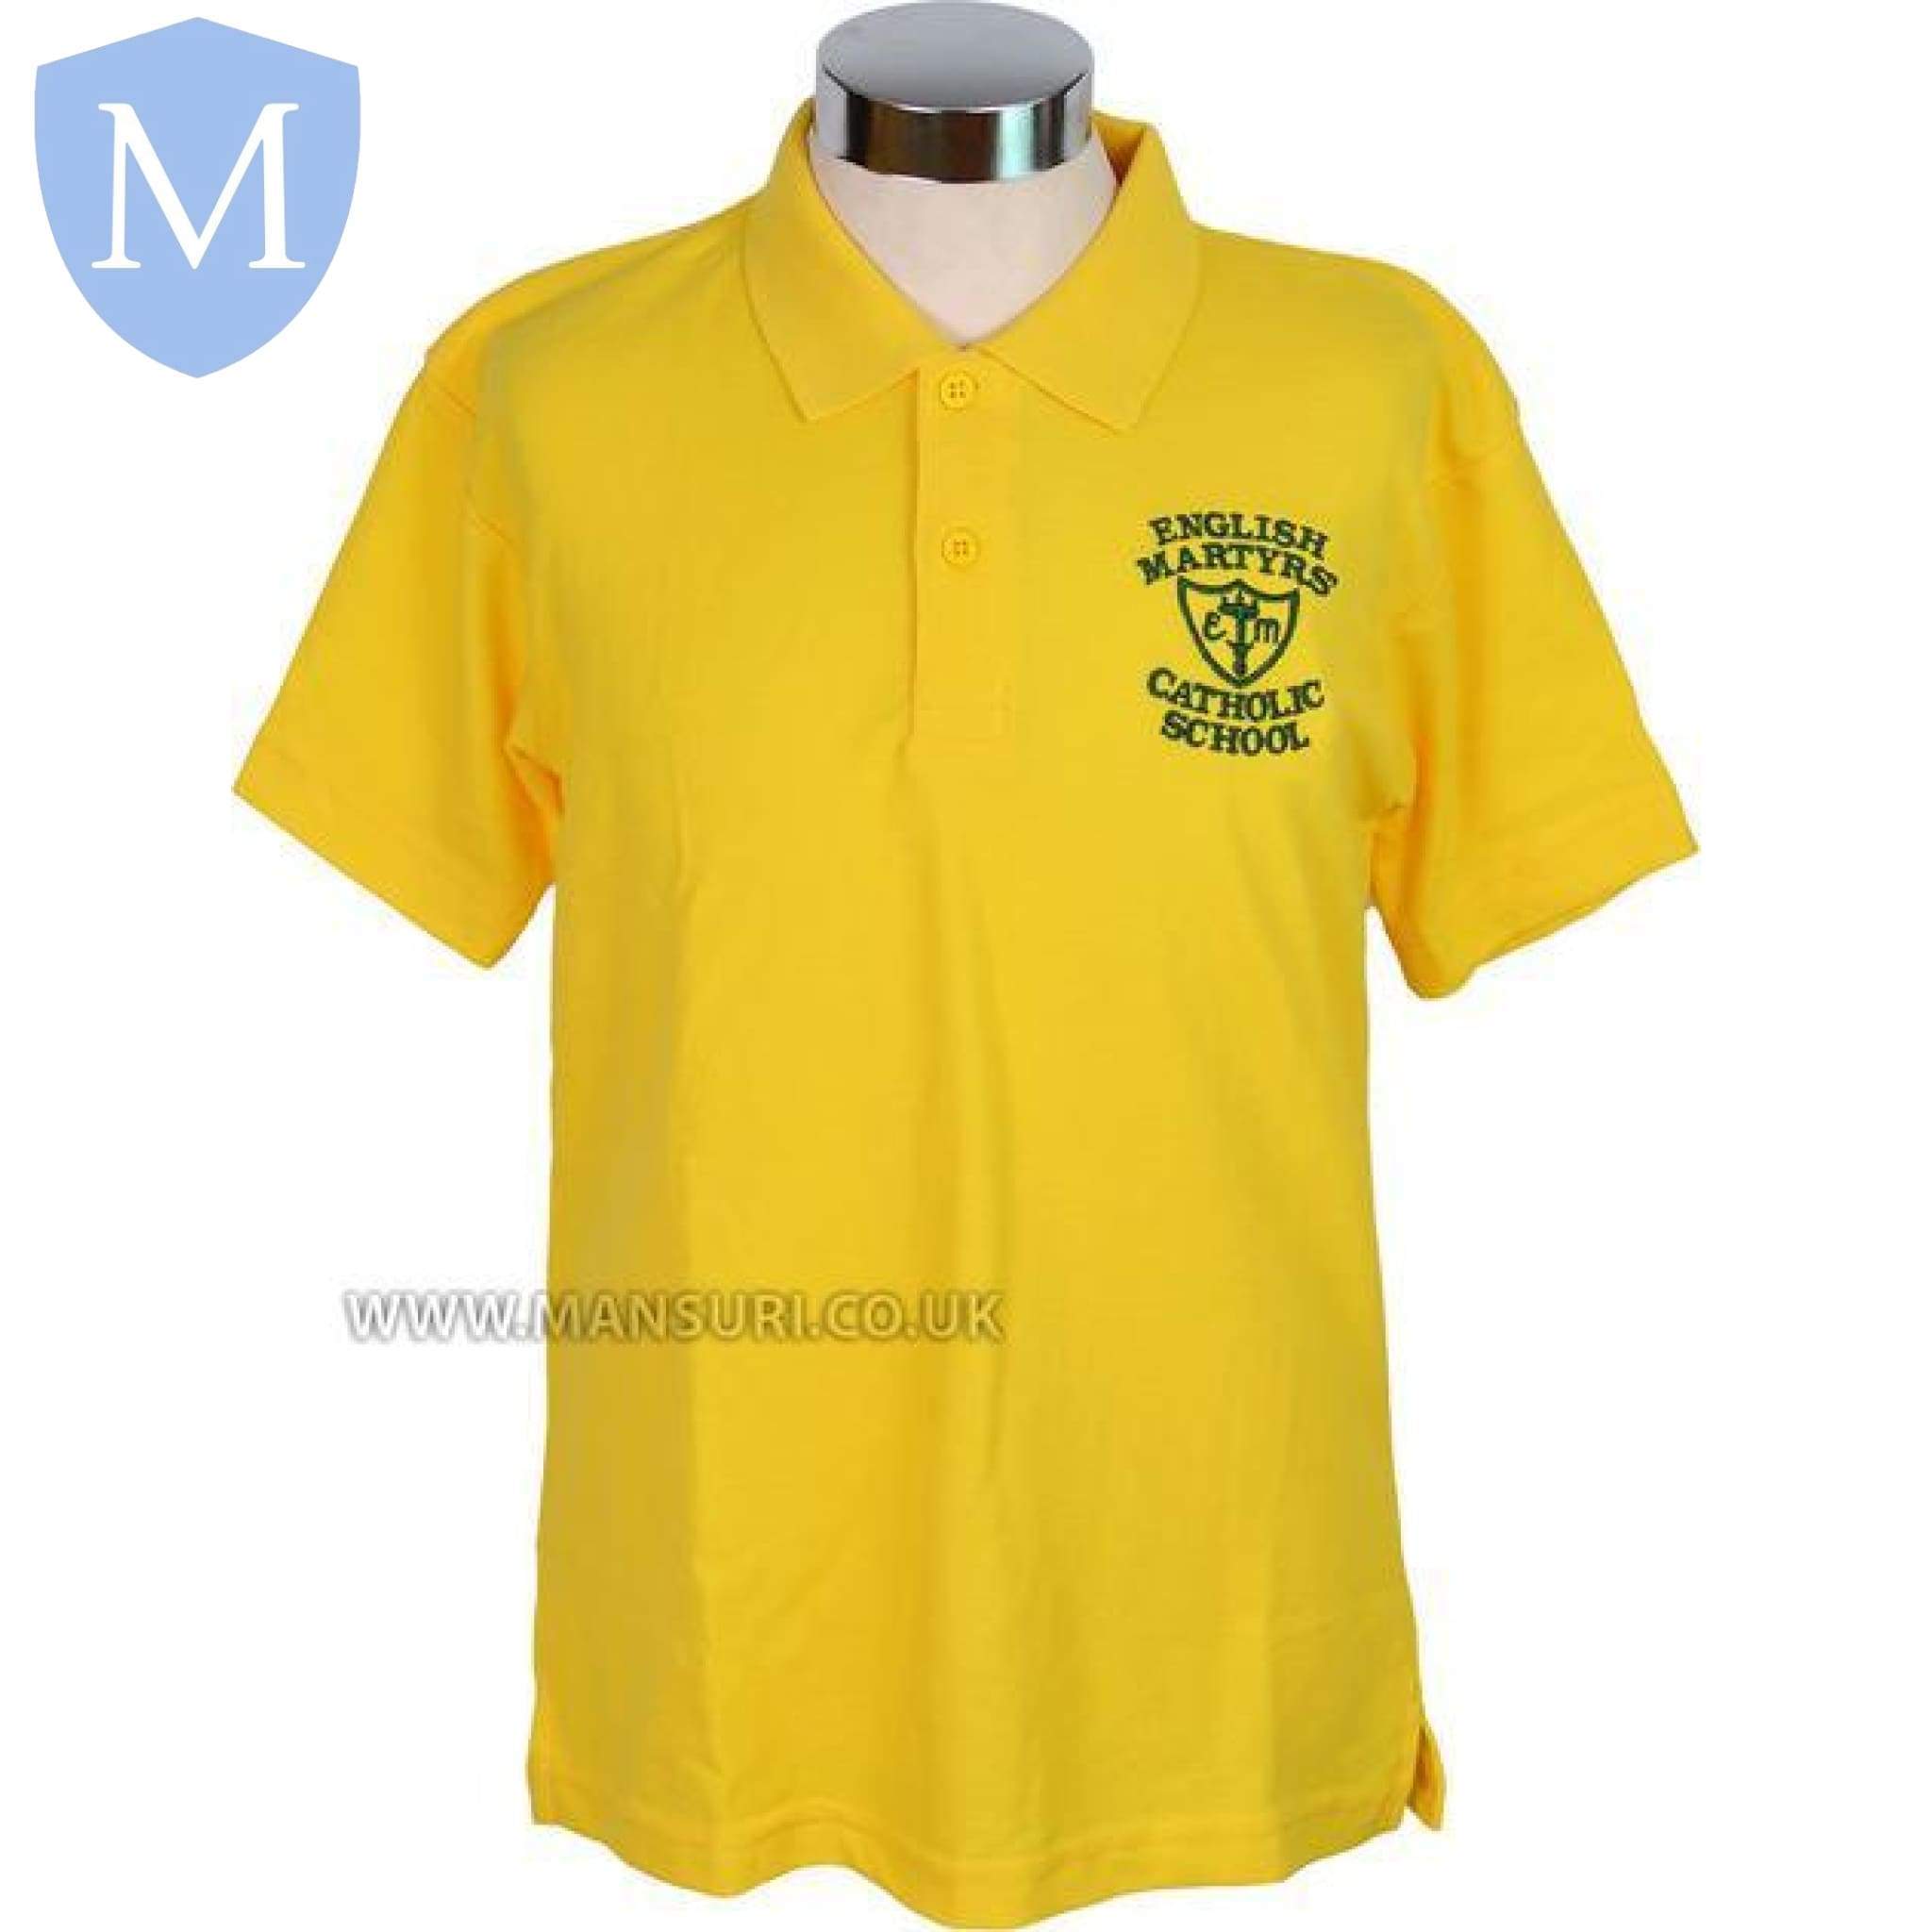 English Martyrs Polo Shirt 38 (Medium),40 (Large),Size-22 2 Years,Size-24 3-4 Years,Size-26 5-6 Years,Size-28 7-8 Years,Size-30 9-10 Years,Size-32 11-12 Years,Size-34 12-13 Years,Size-36